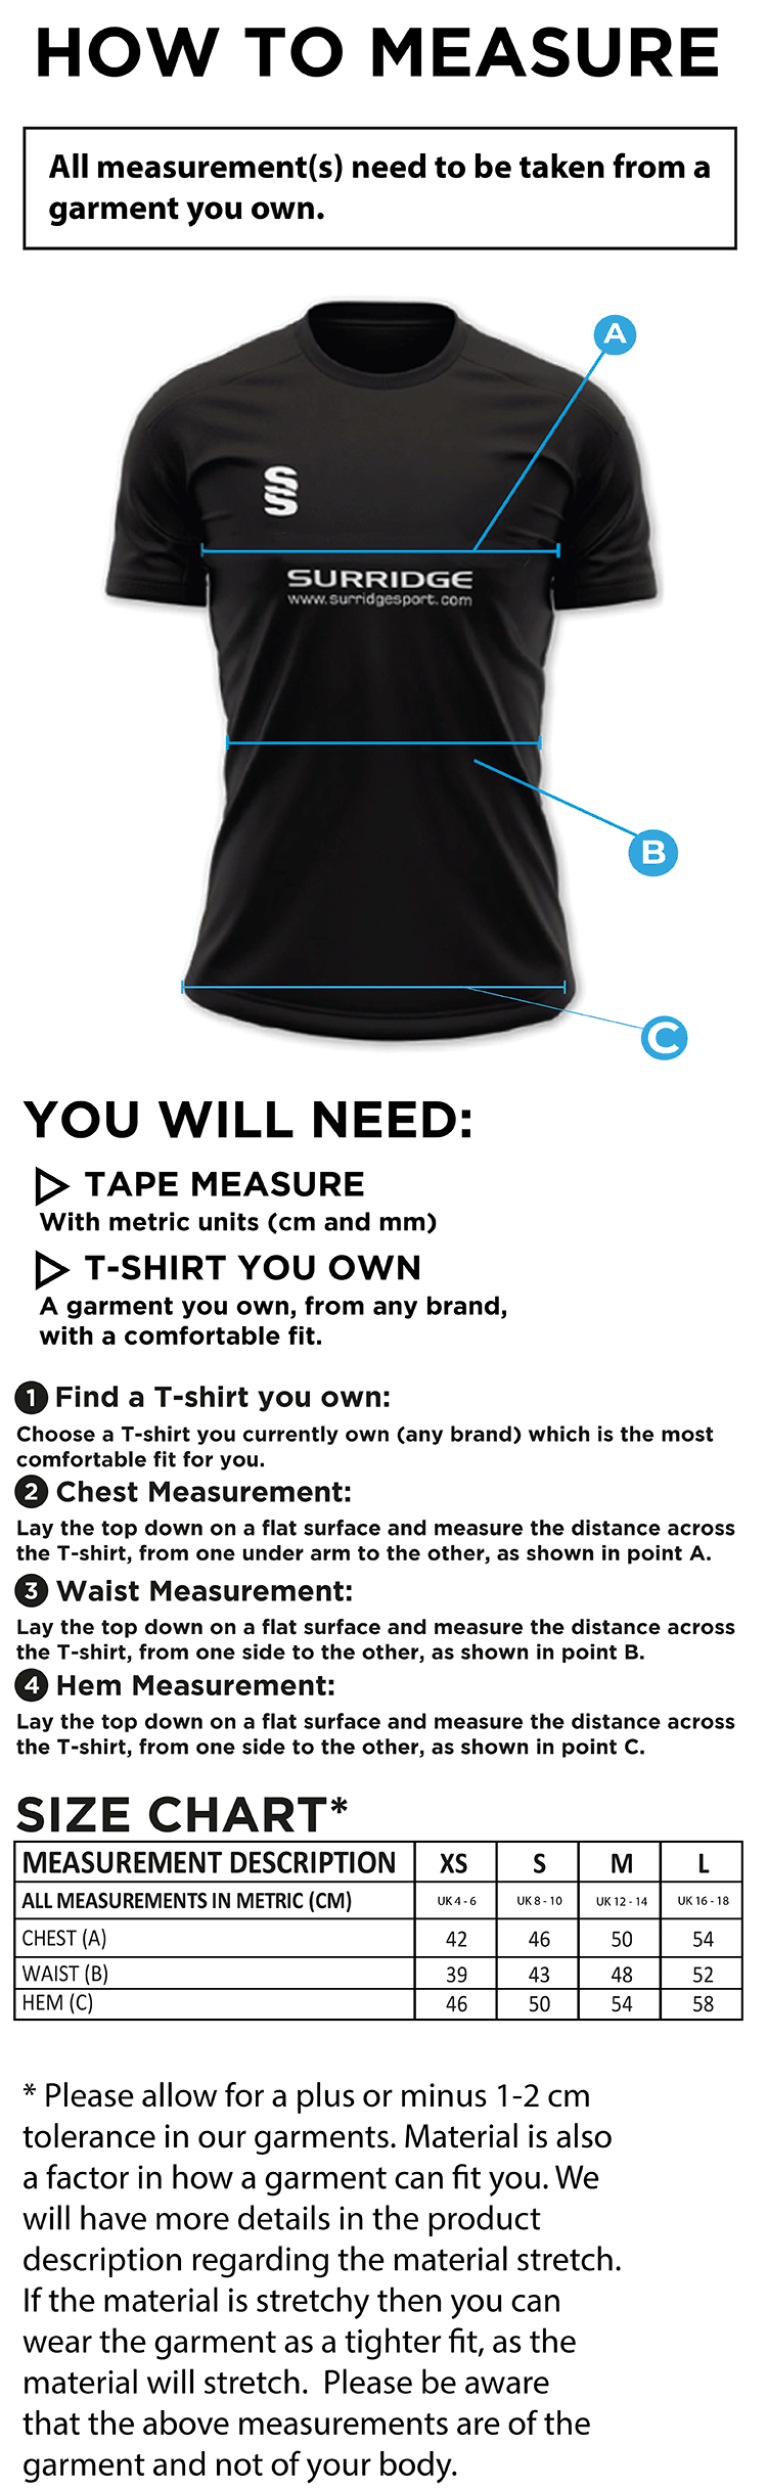 Women's Camo Games Shirt : Black - Size Guide